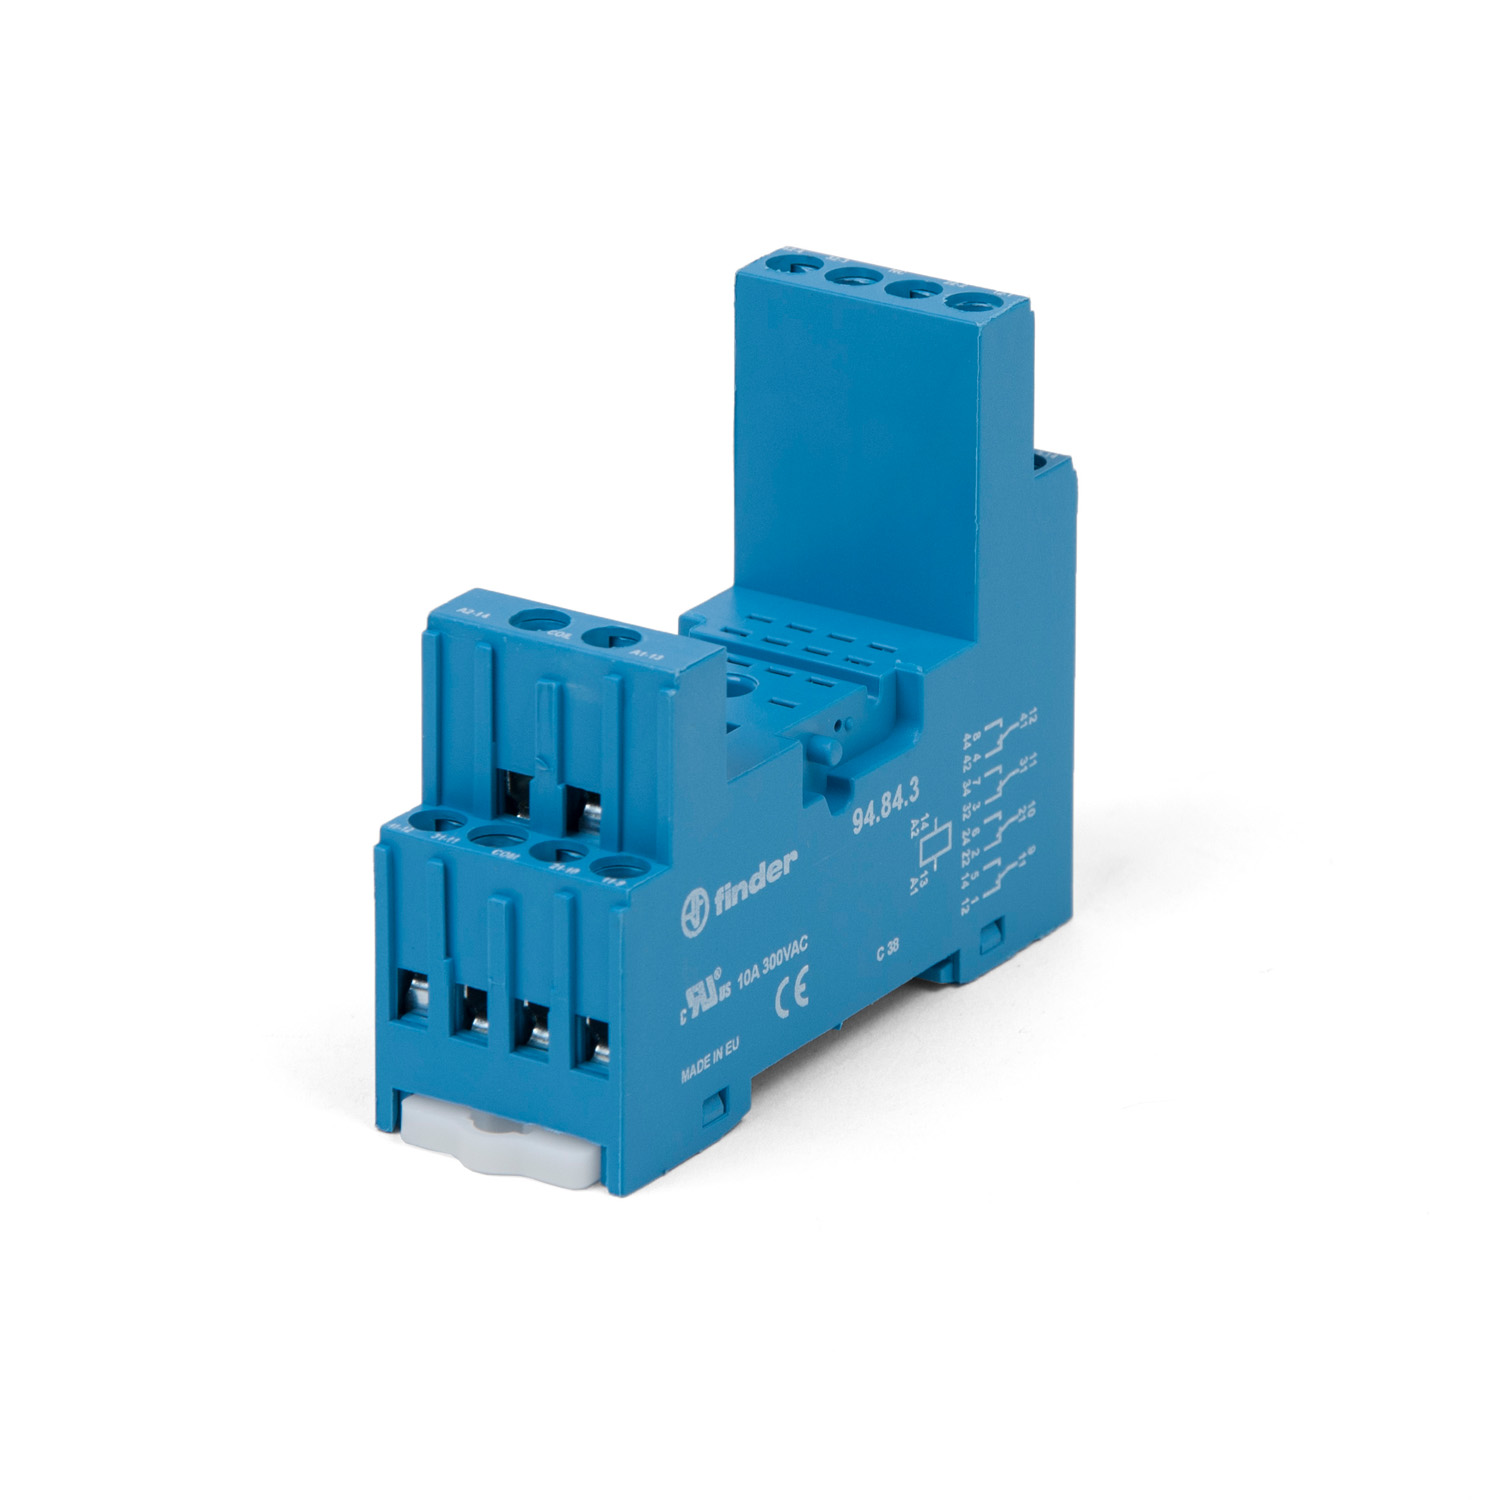 EFN-150 Socket for relais